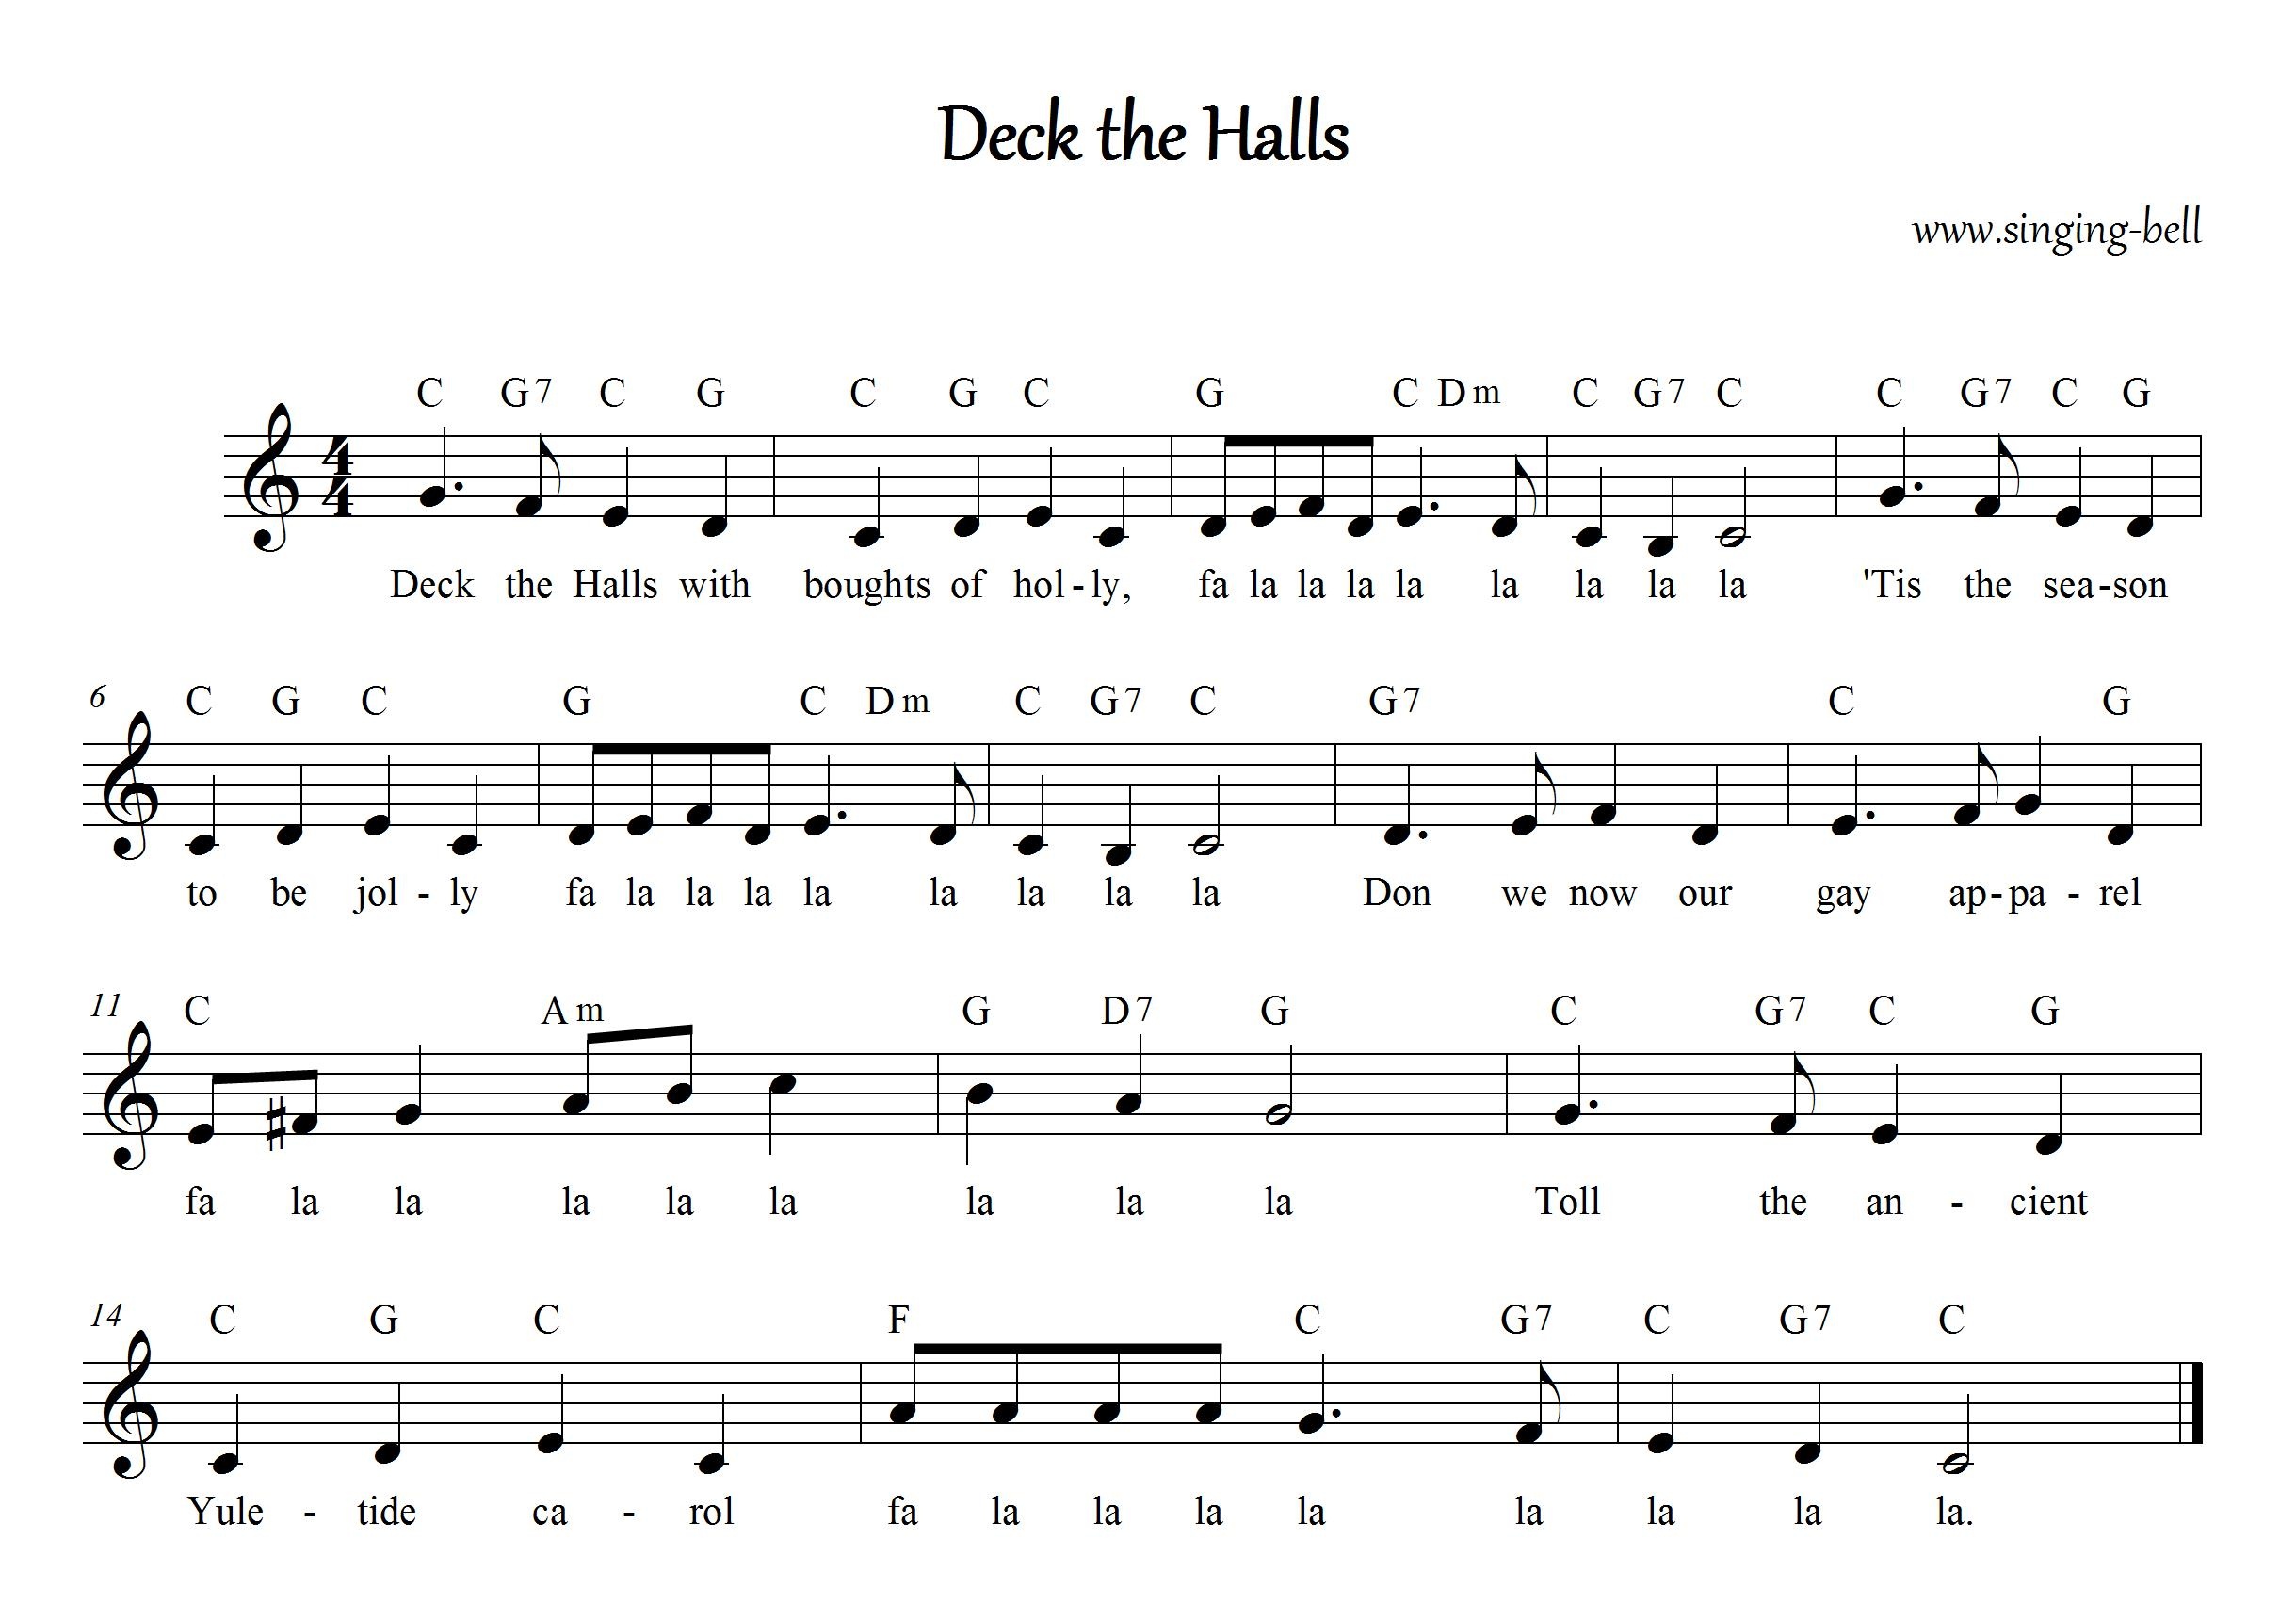 Christmas Carol Sheet Music | 30 Free Scores To Download - Free Printable Sheet Music Lyrics